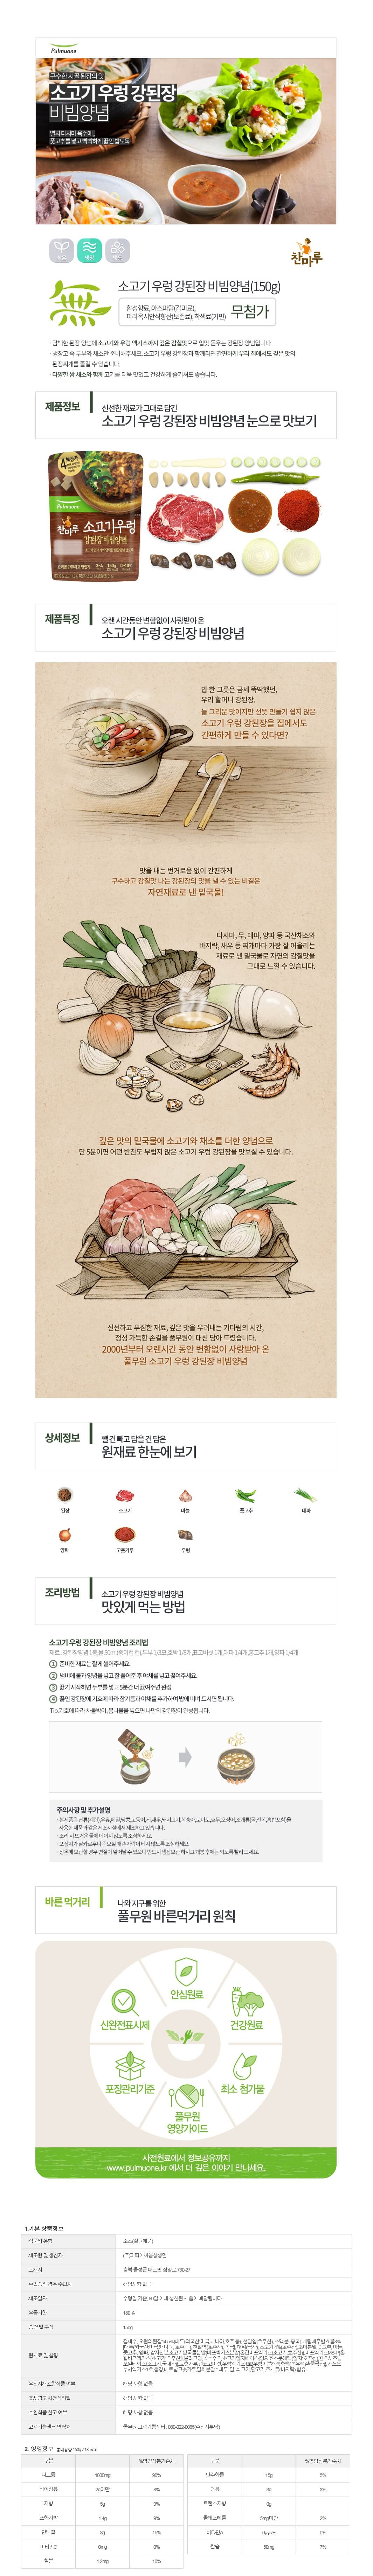 韓國食品-[Pulmuone] Beef Gangdoenjang Authentic Sauce 150g